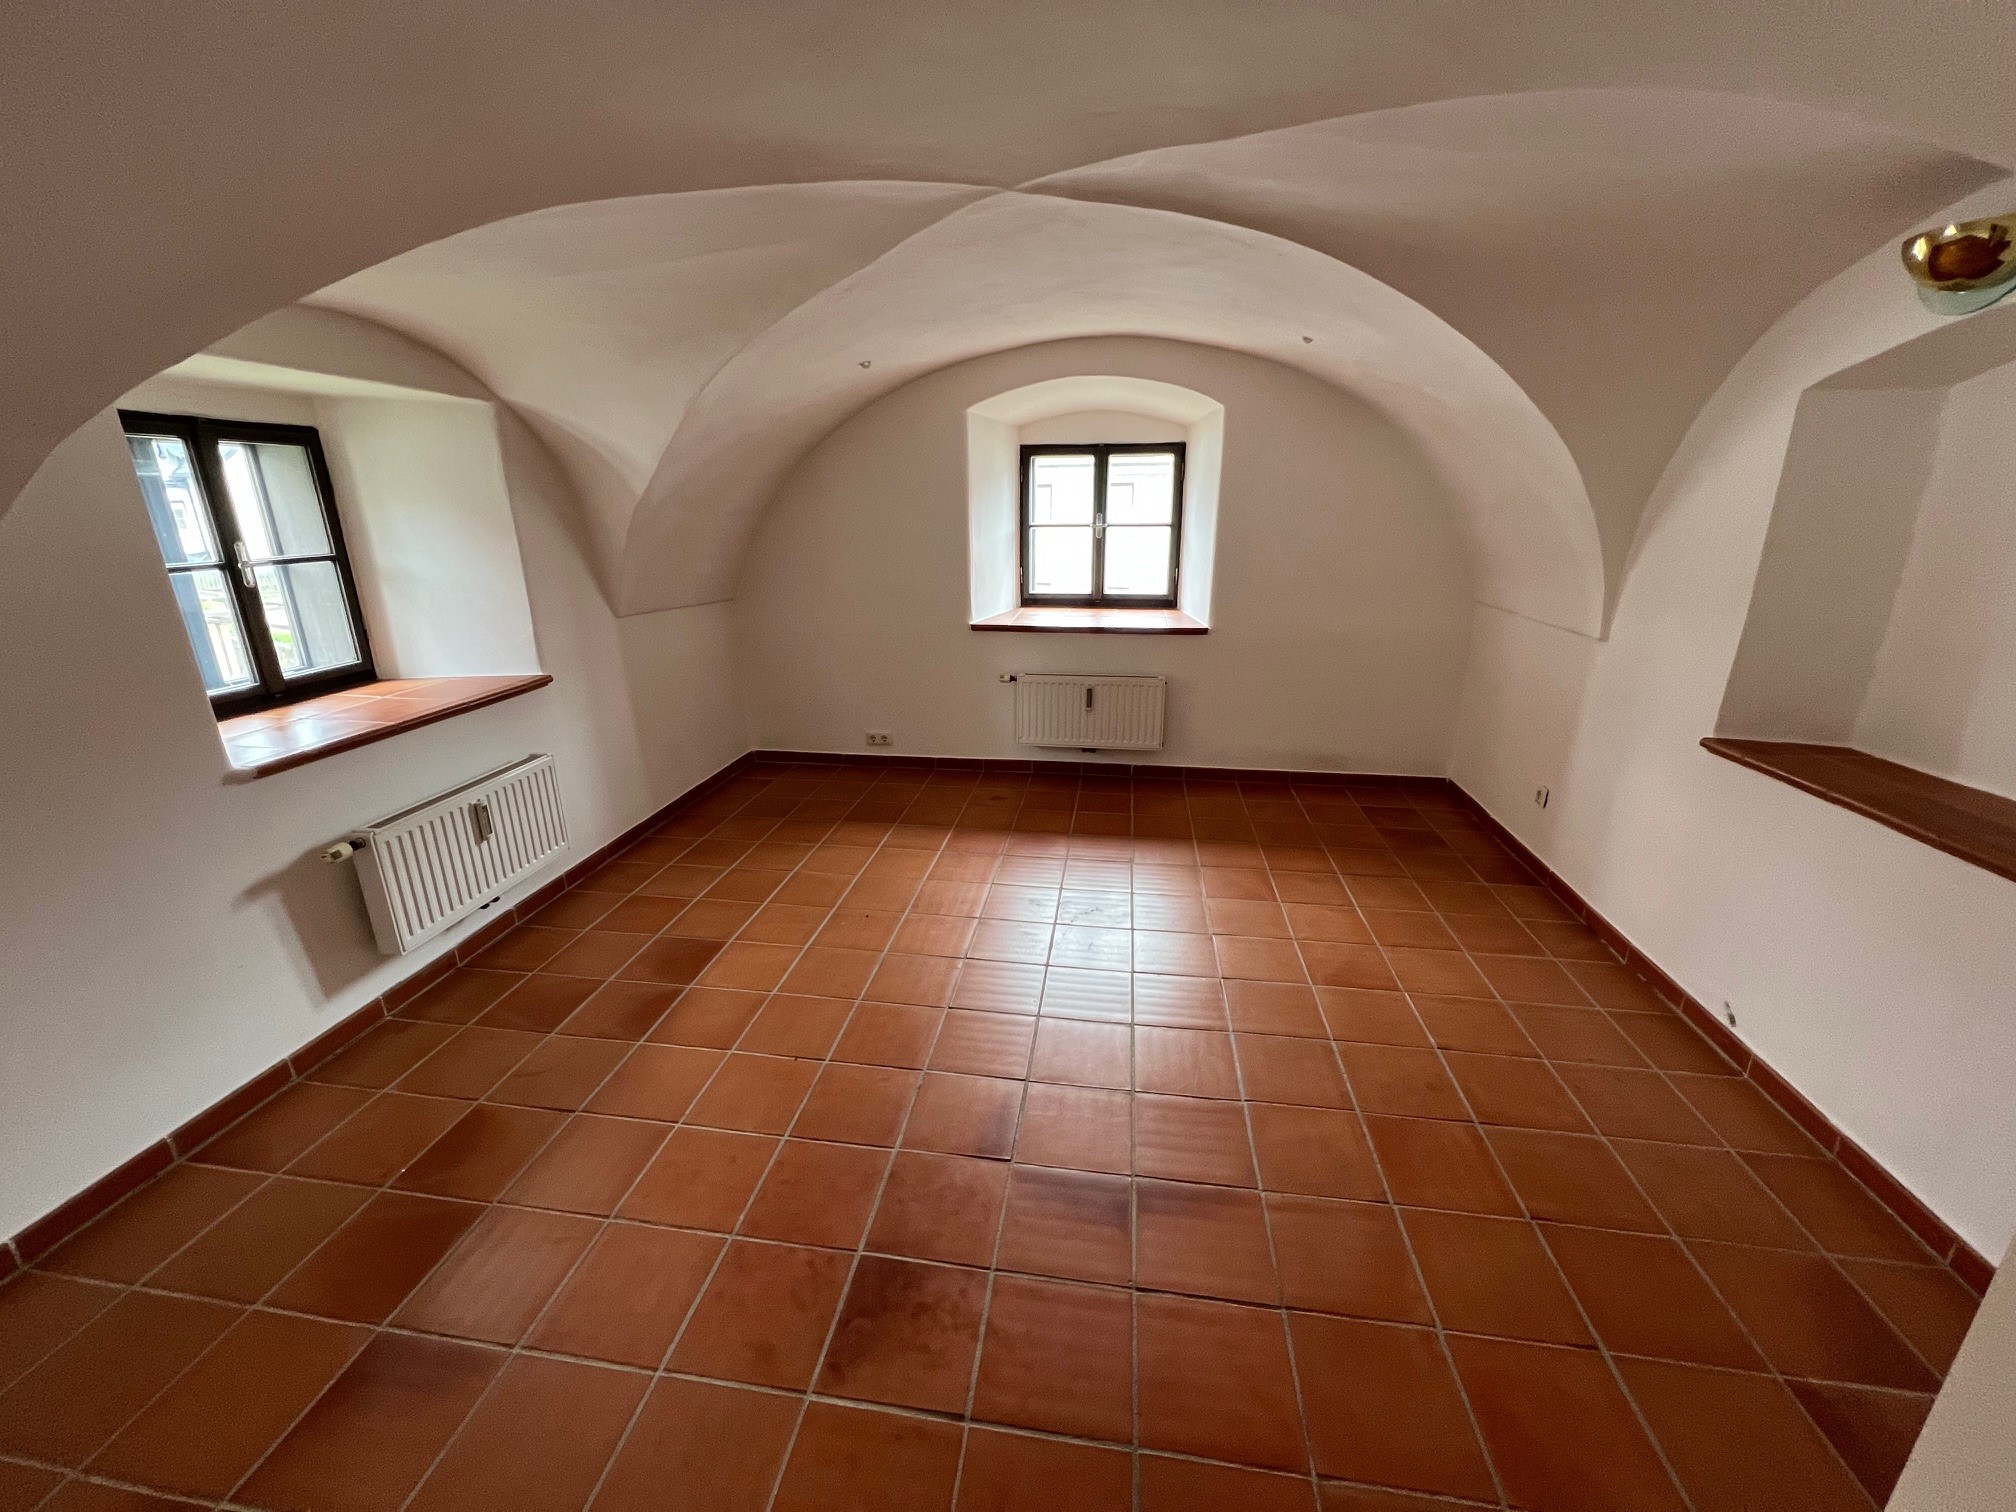 Wunderschöne Mietwohnung in historischem Gebäude von St. Lorenzen im Mürztal